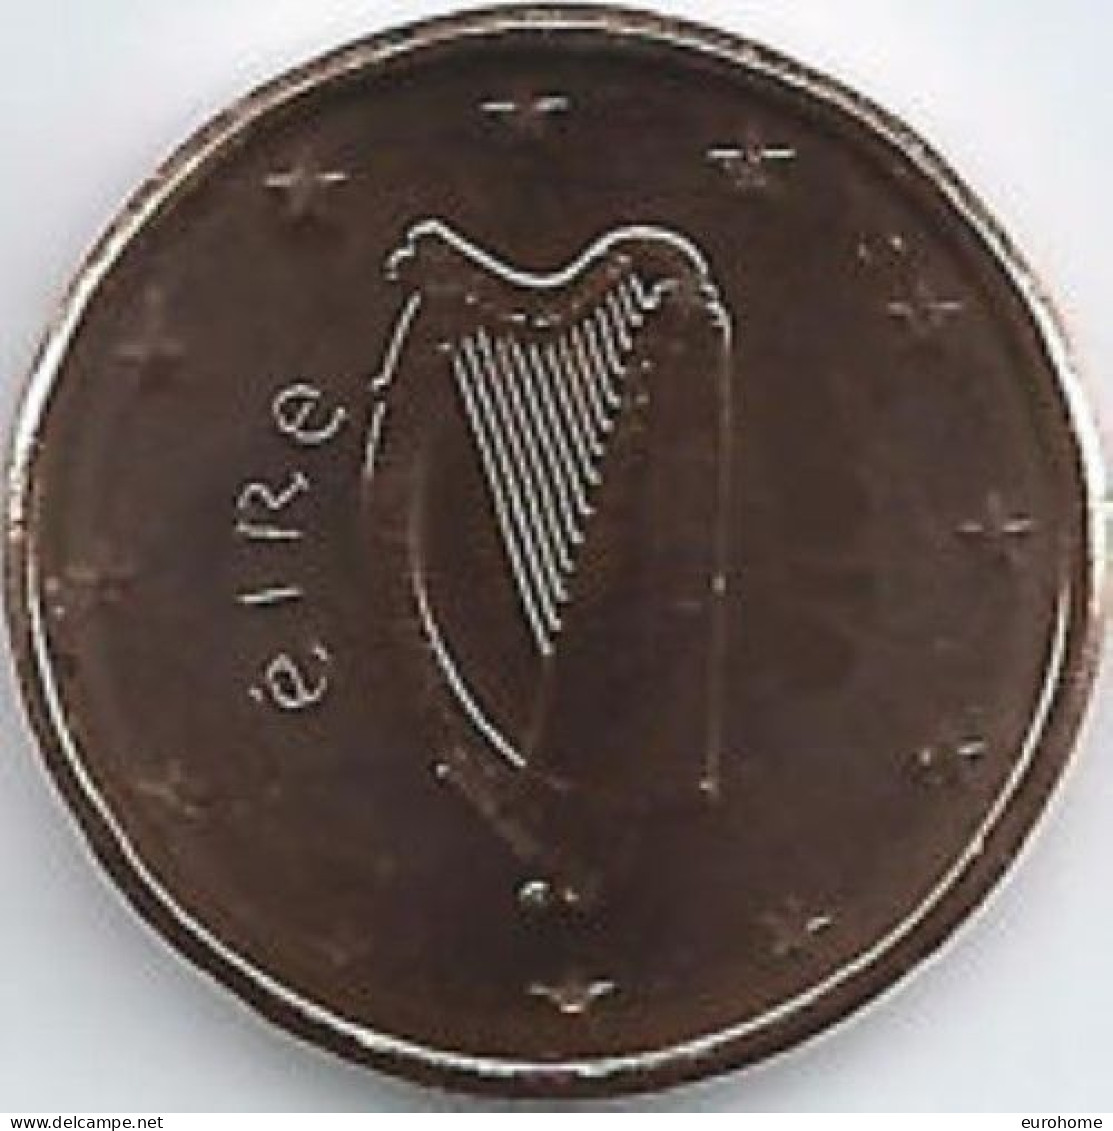 Ierland 2023  5 Cent  UNC Uit De BU  UNC Du Coffret  ZEER ZELDZAAM - EXTREME RARE  5.000 Ex !!! - Ierland